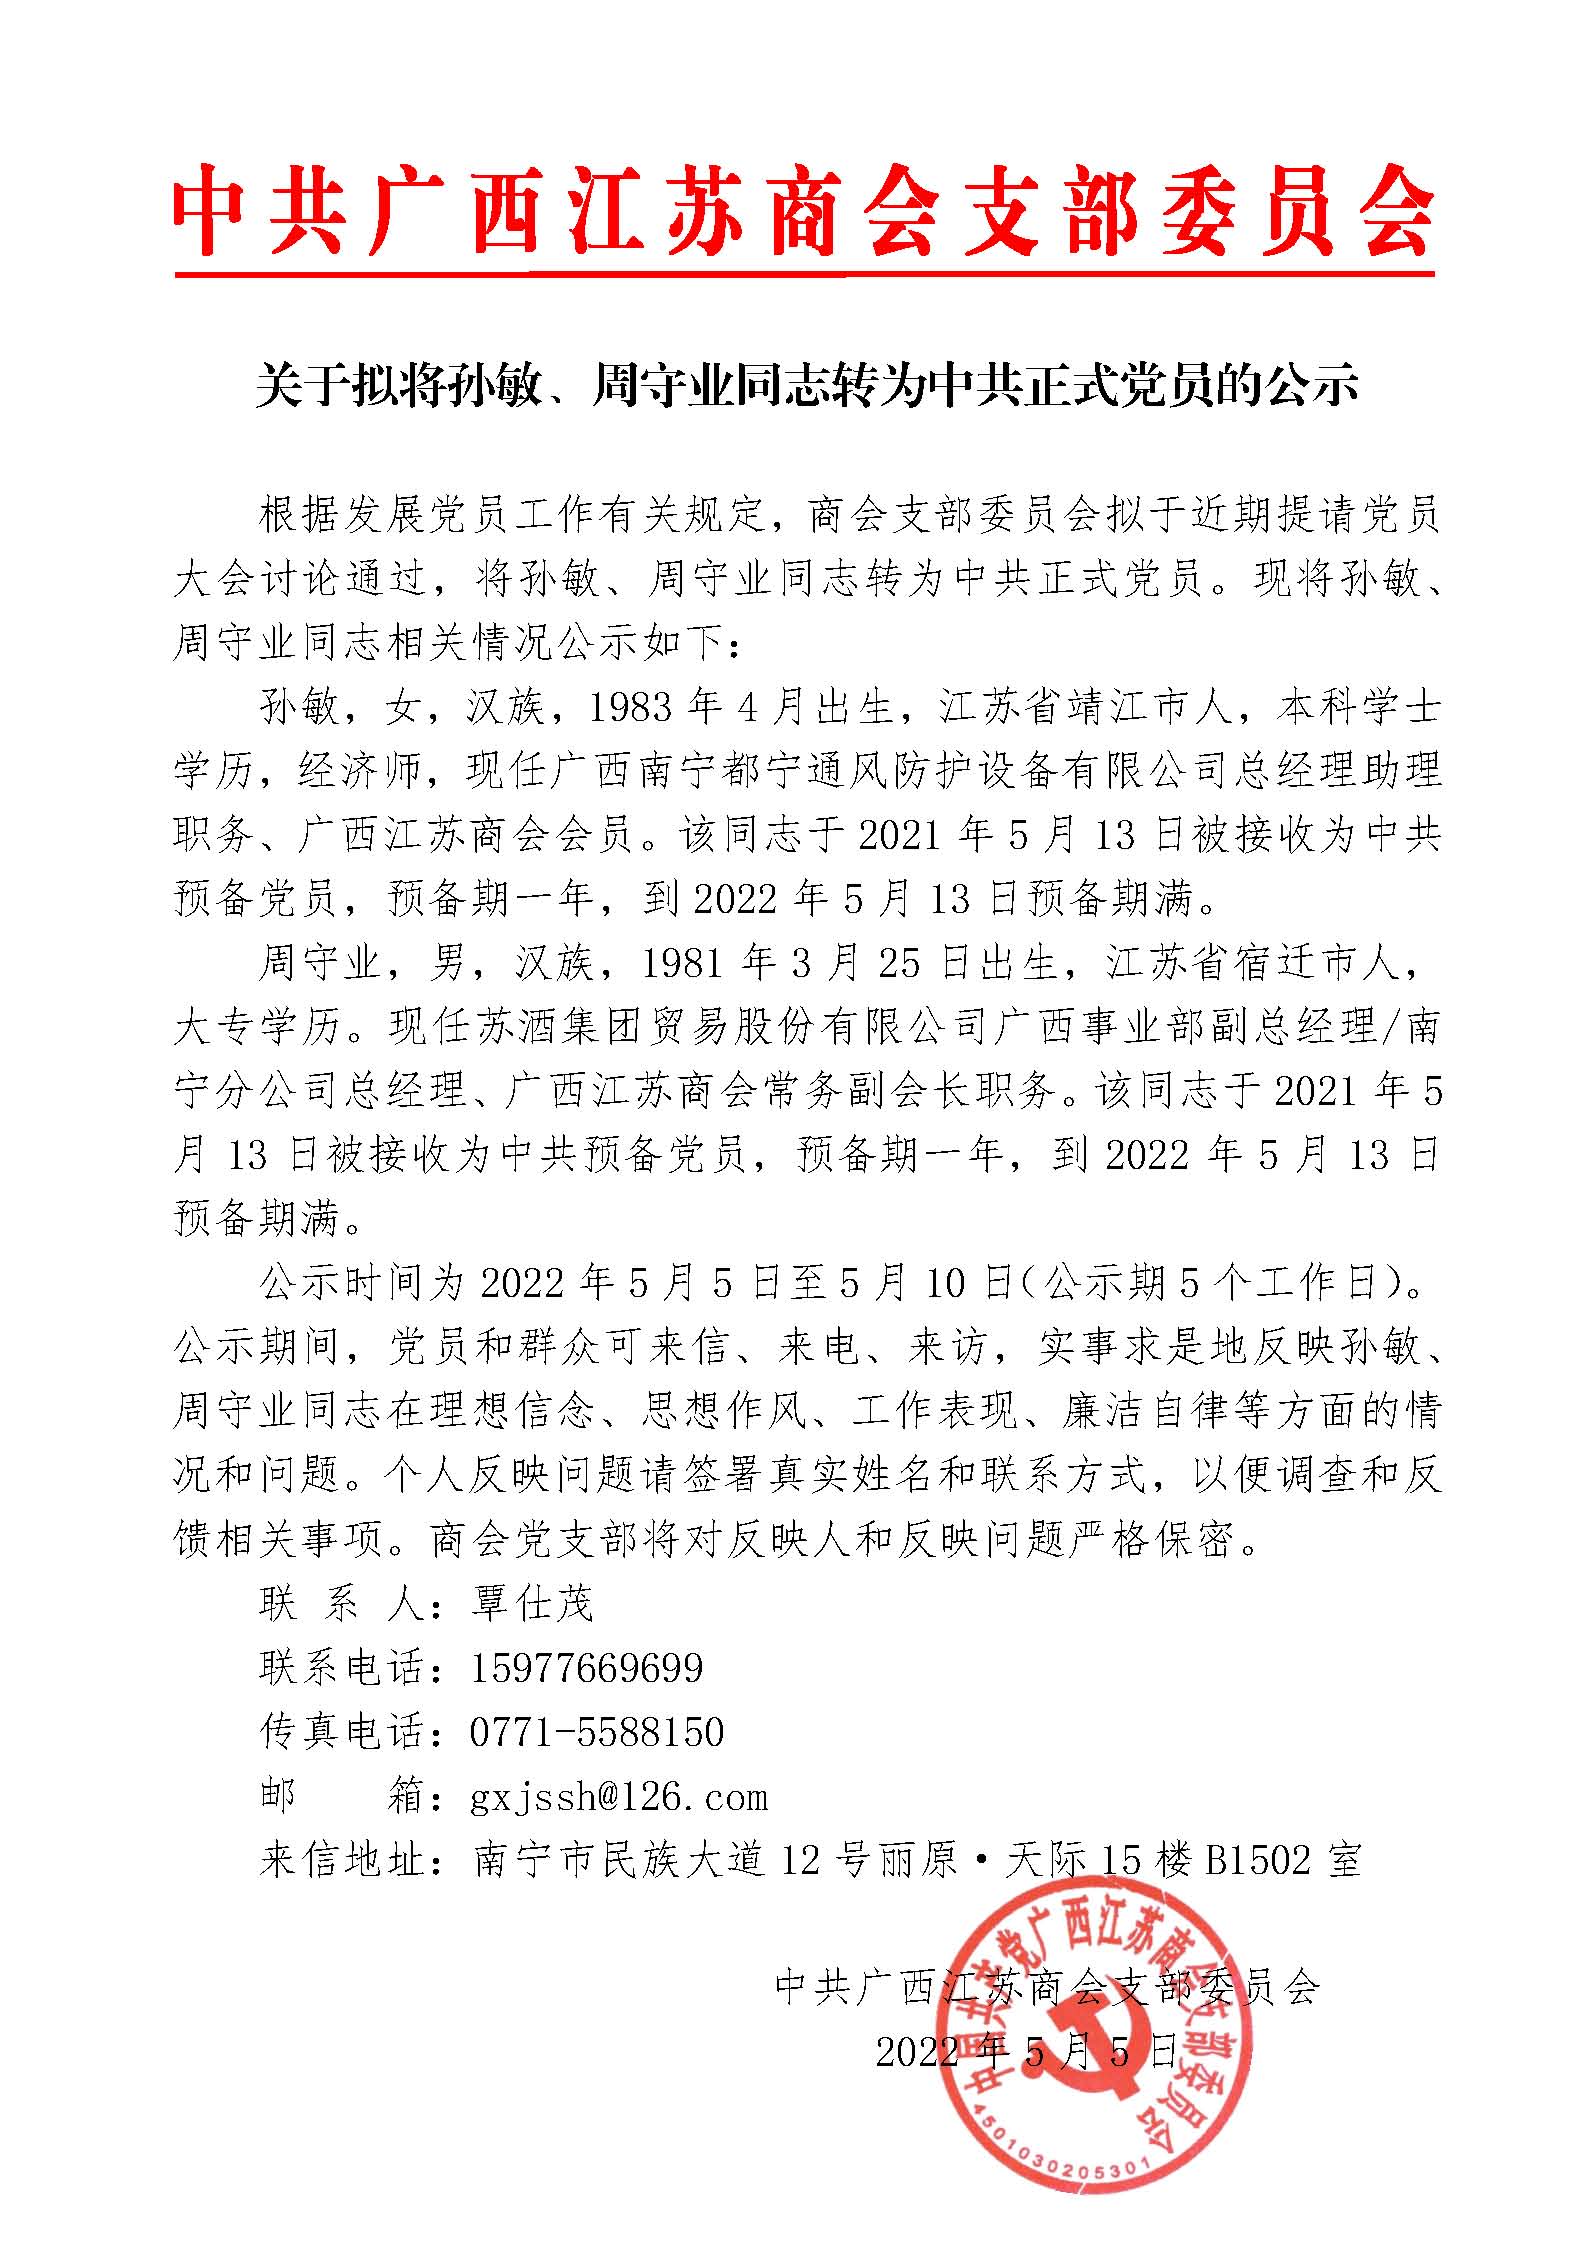 关于拟将孙敏、周守业同志转为中共正式党员的公示（0504）.jpg